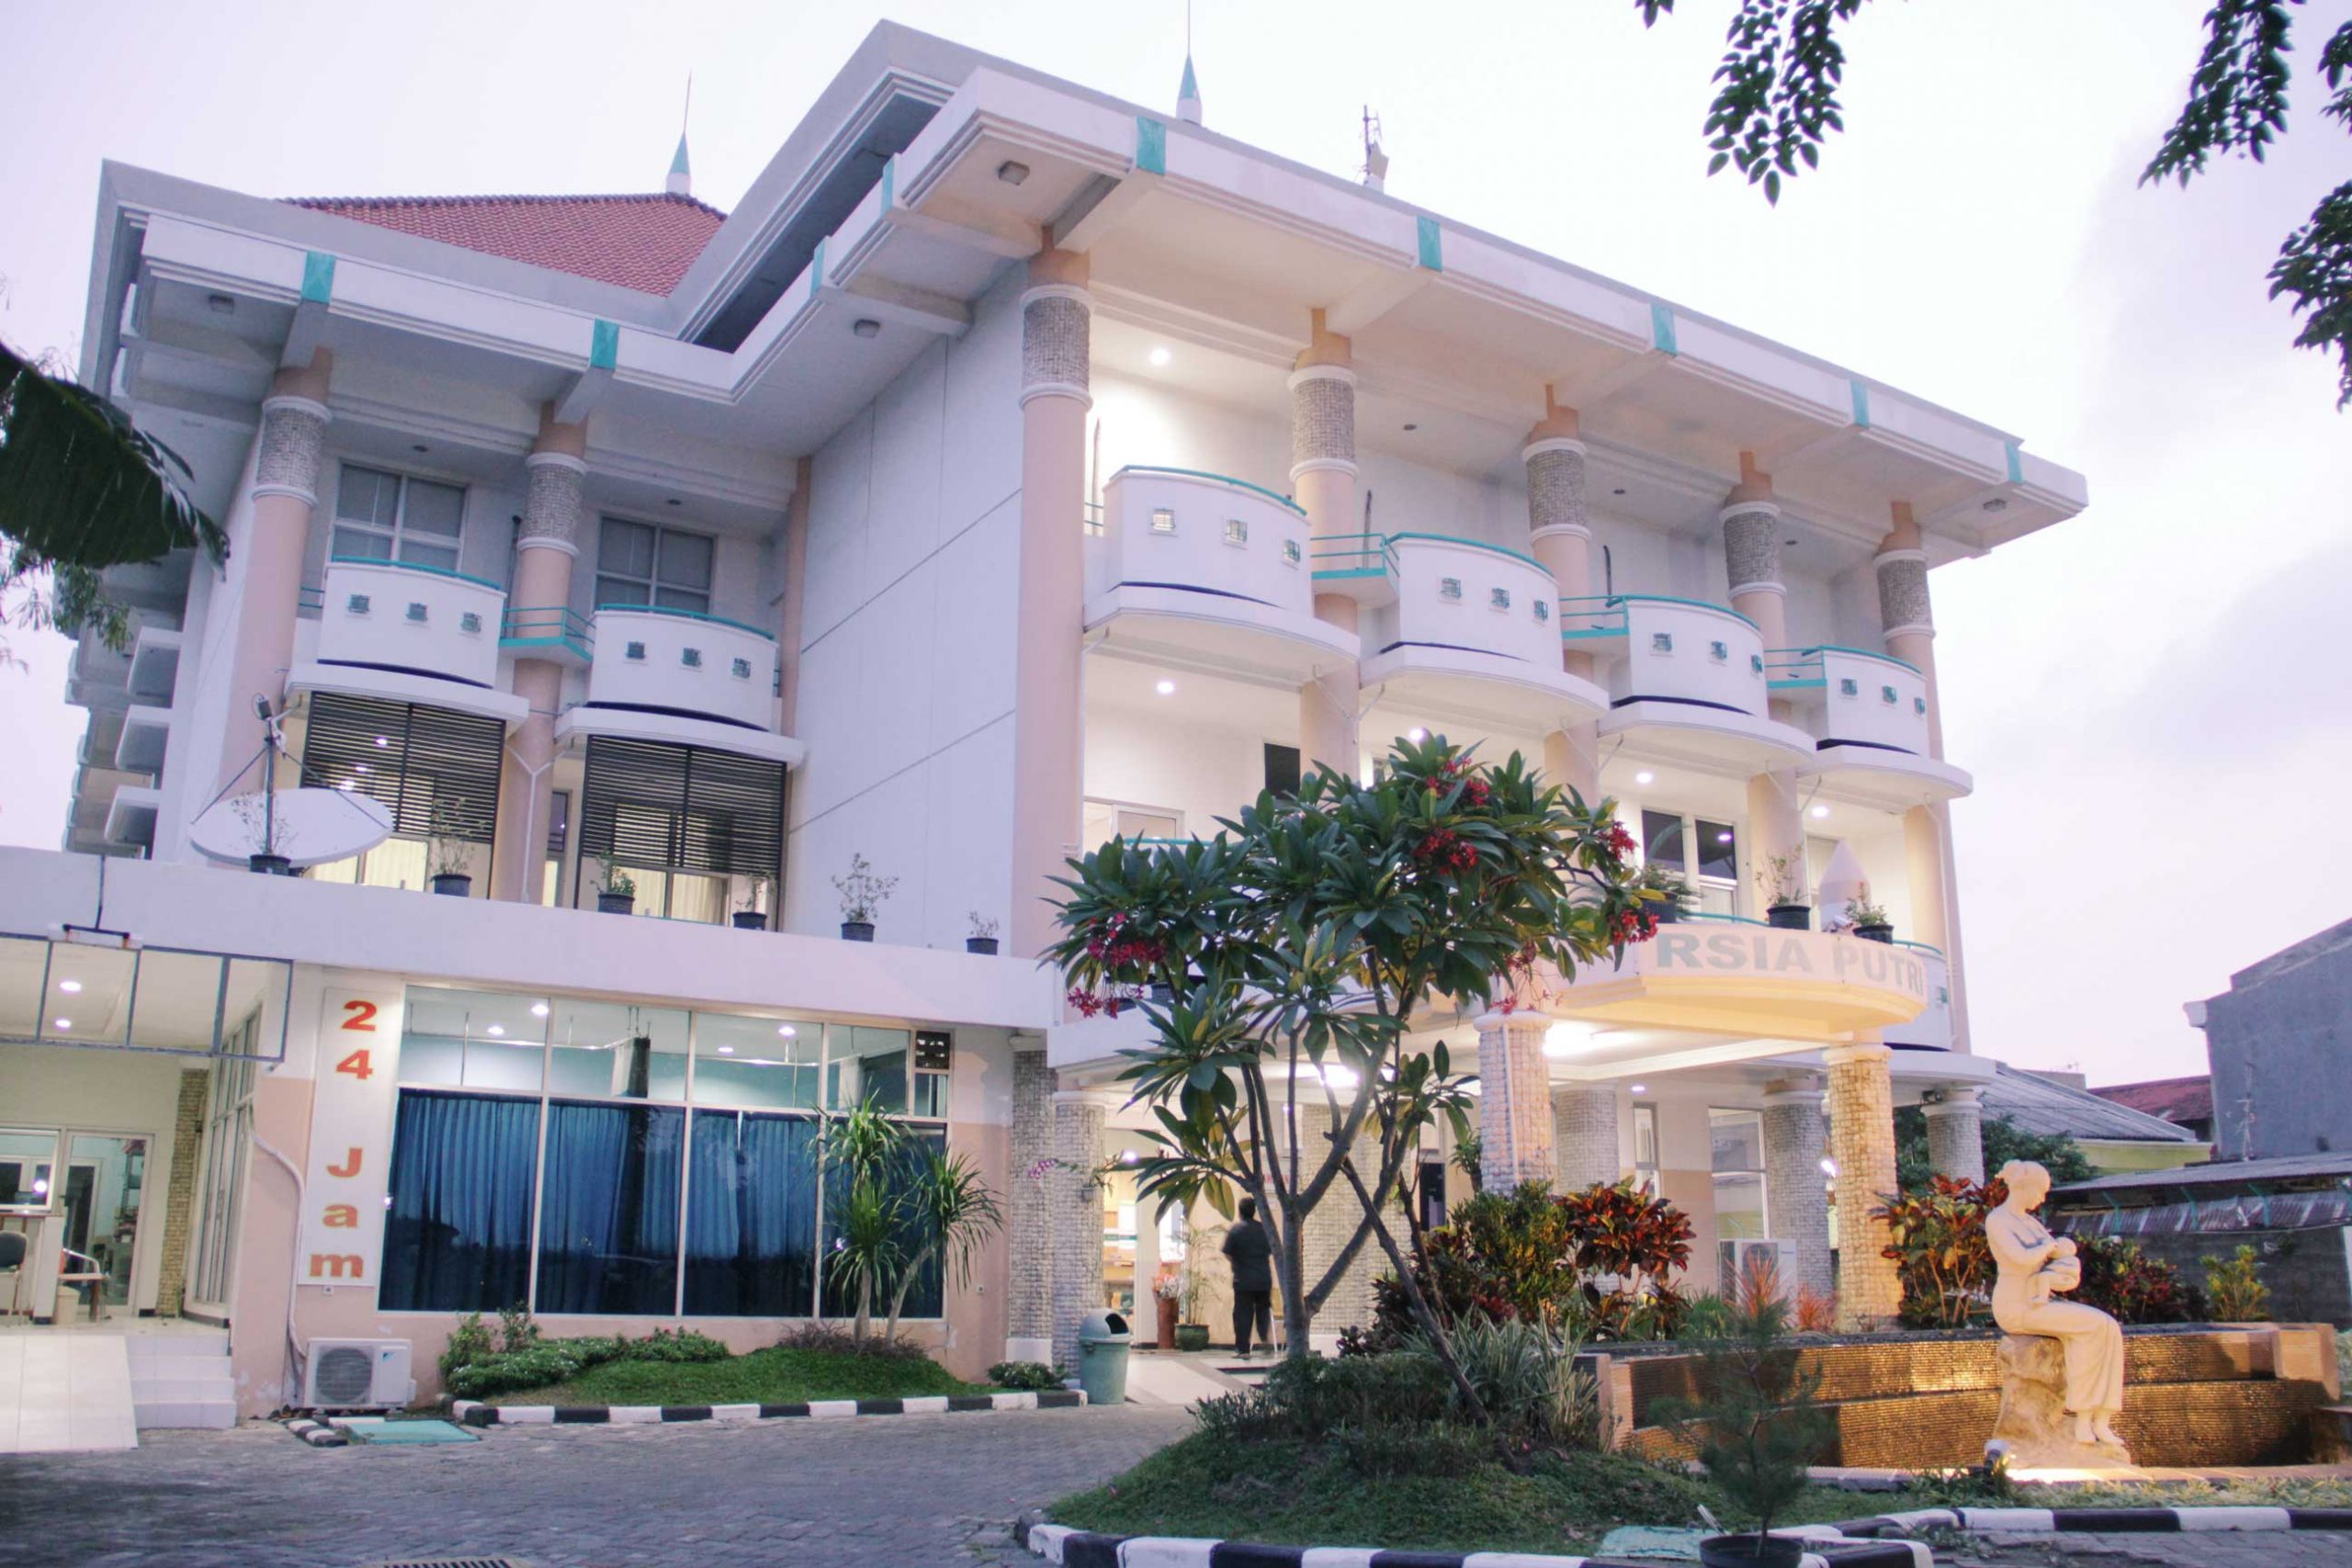 Rumah Sakit Ibu dan Anak PUTRI Surabaya